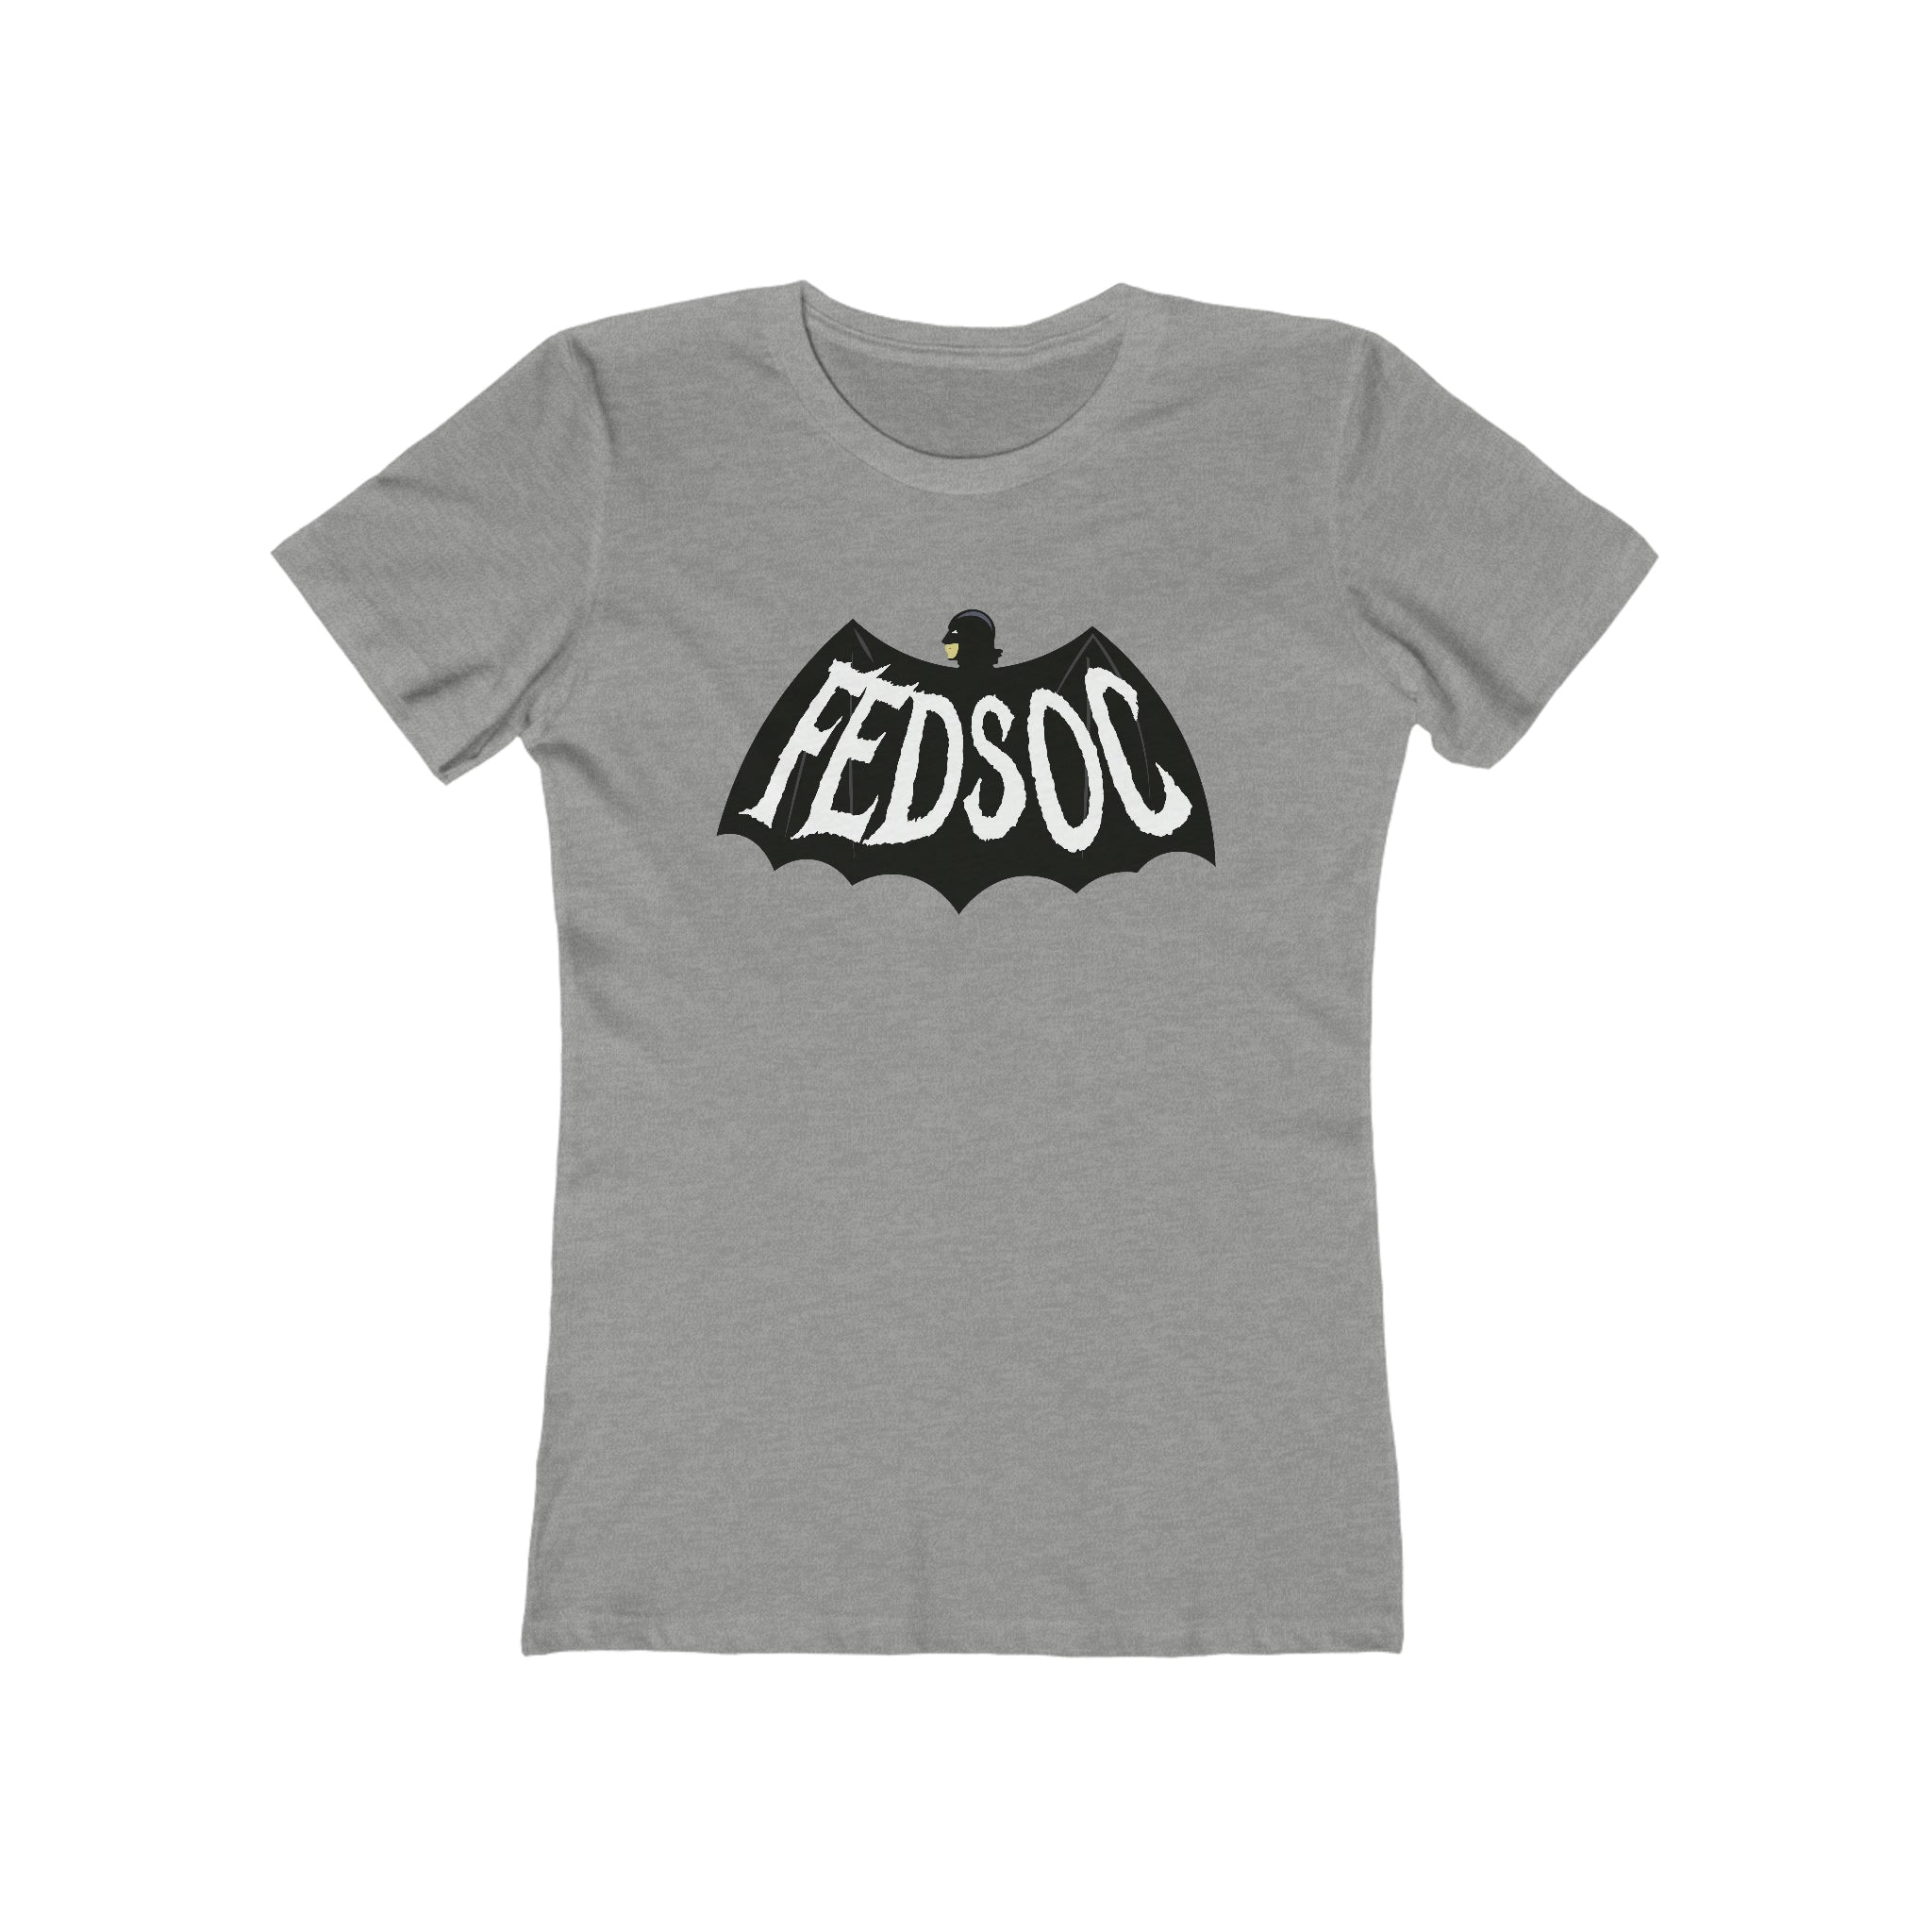 BatMad Women's Shirt (Fed Soc)